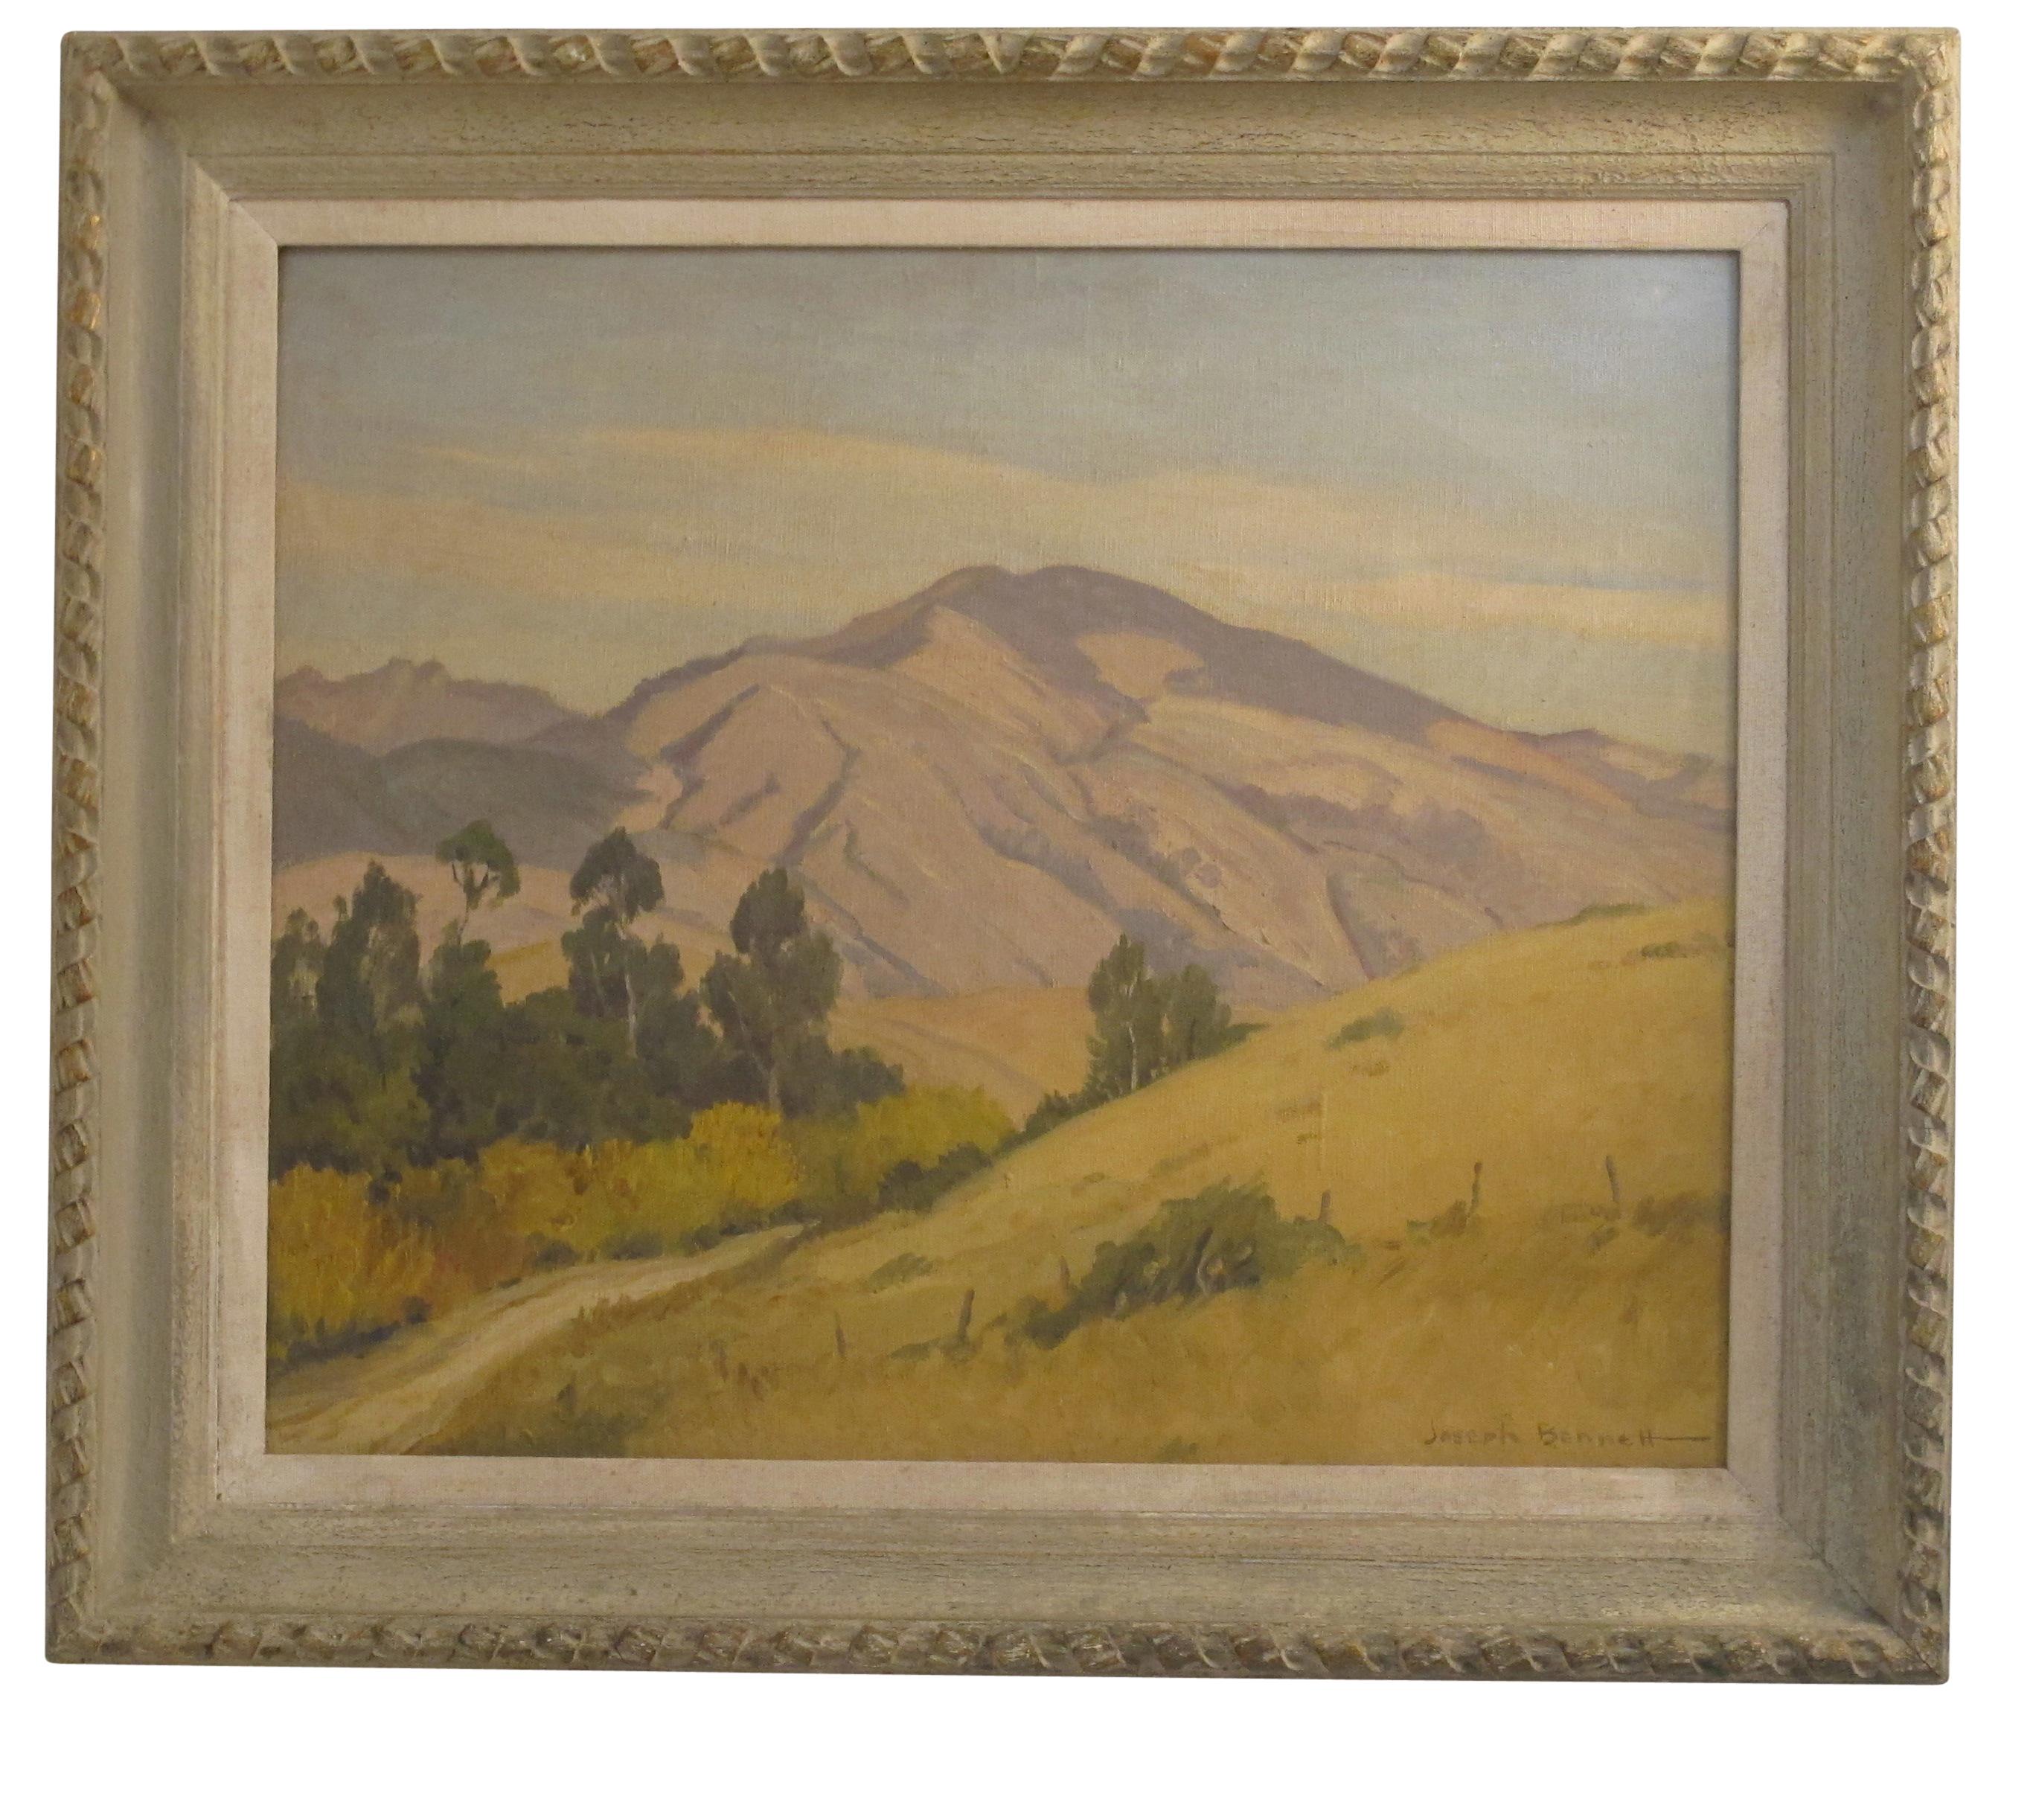 Peinture de paysage californien signée Joseph Bennett. Huile sur toile dans un cadre en bois sculpté et peint.
Joseph Hastings Bennett (né en 1889 - mort en 1969) était un peintre, graveur et graveur. Il est né à San Diego, en Californie, le 27